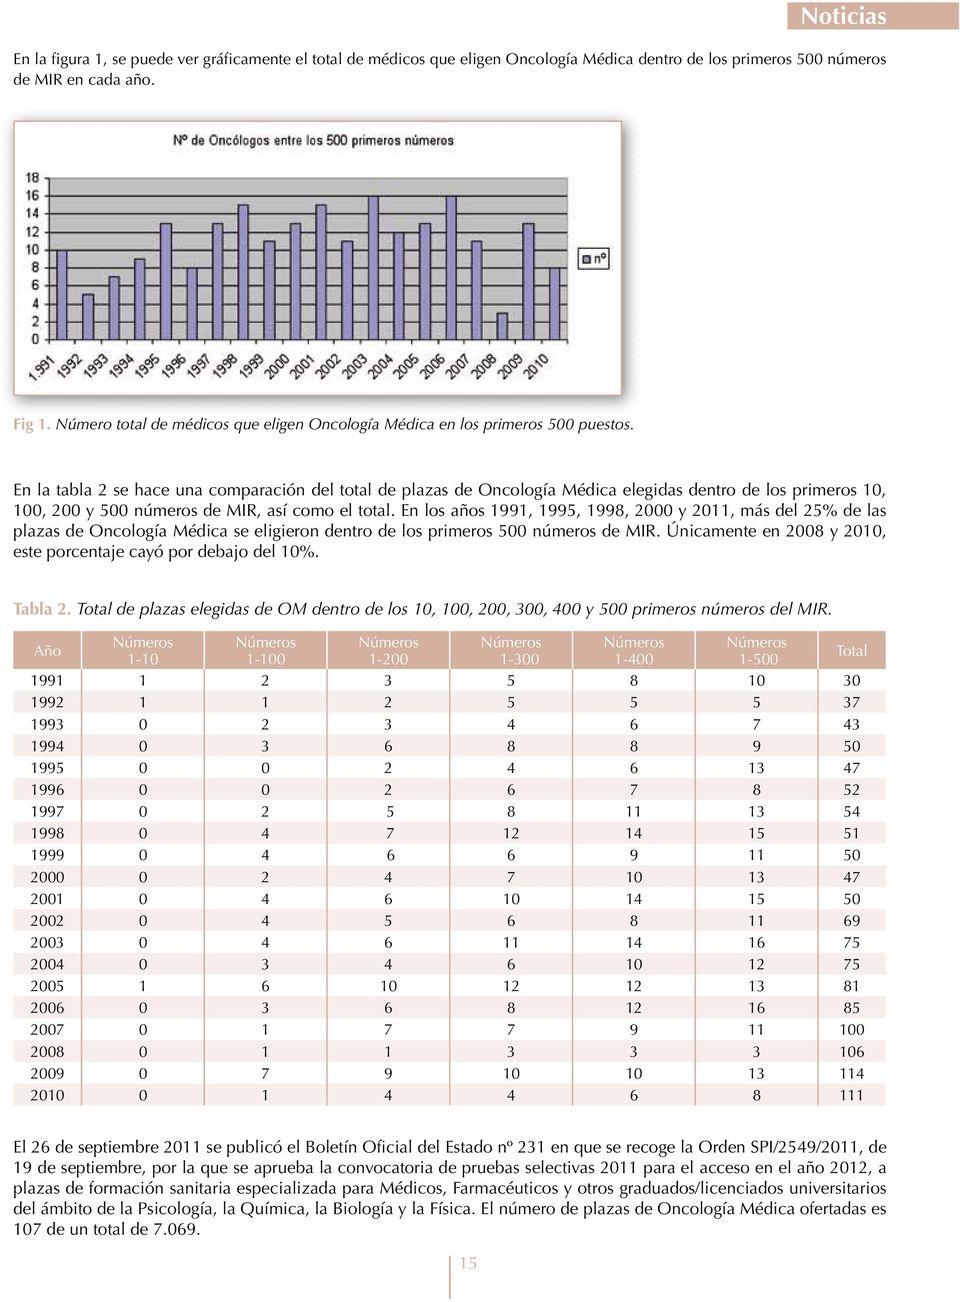 En la tabla 2 se hace una comparación del total de plazas de Oncología Médica elegidas dentro de los primeros 10, 100, 200 y 500 números de MIR, así como el total.